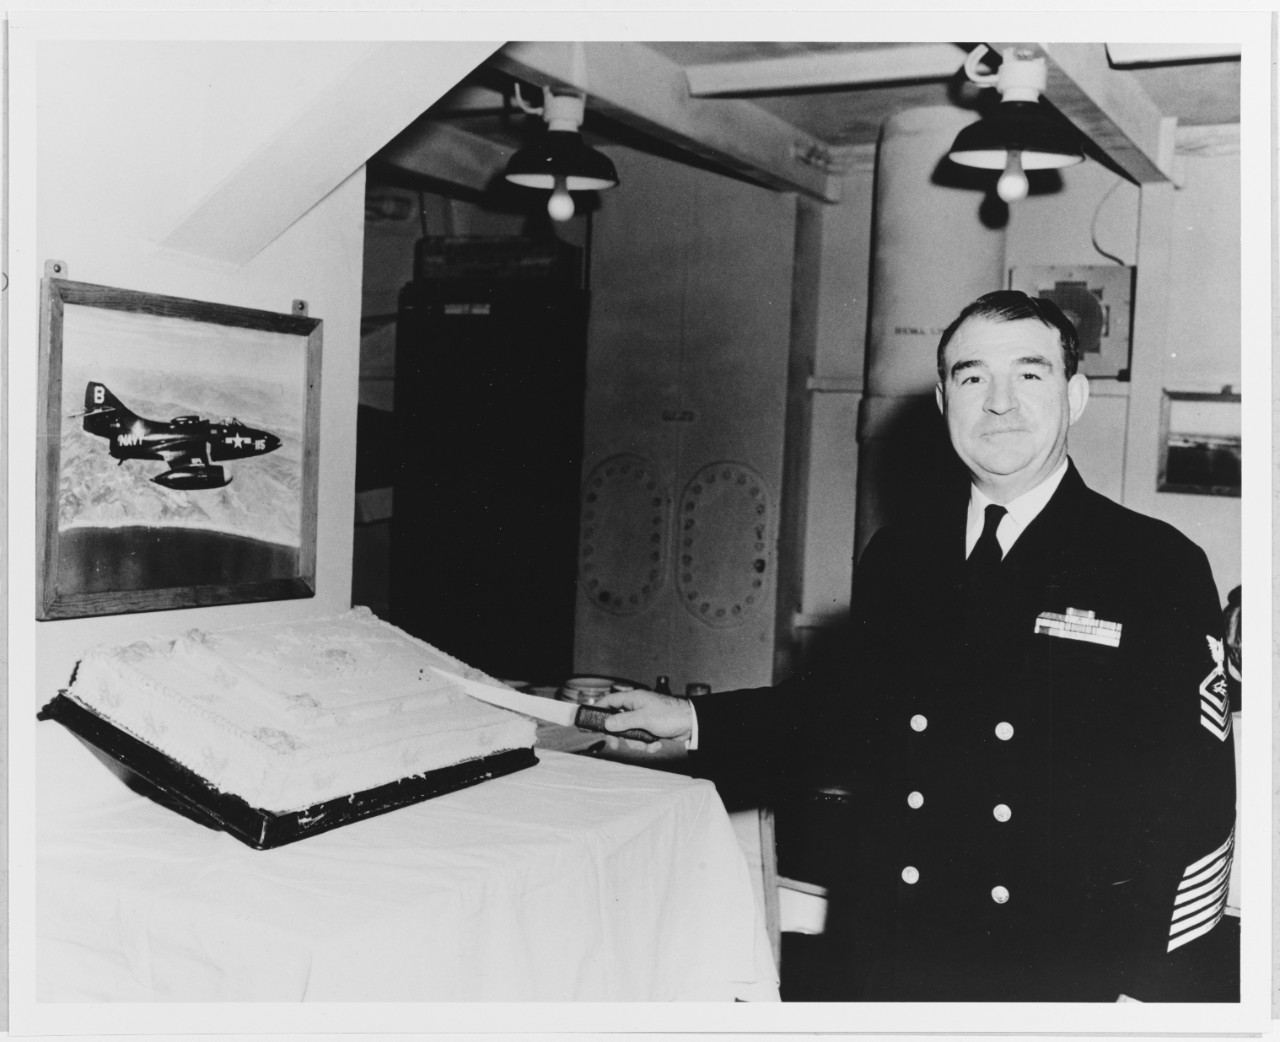 Chief Radioman William R. Lucas, USN